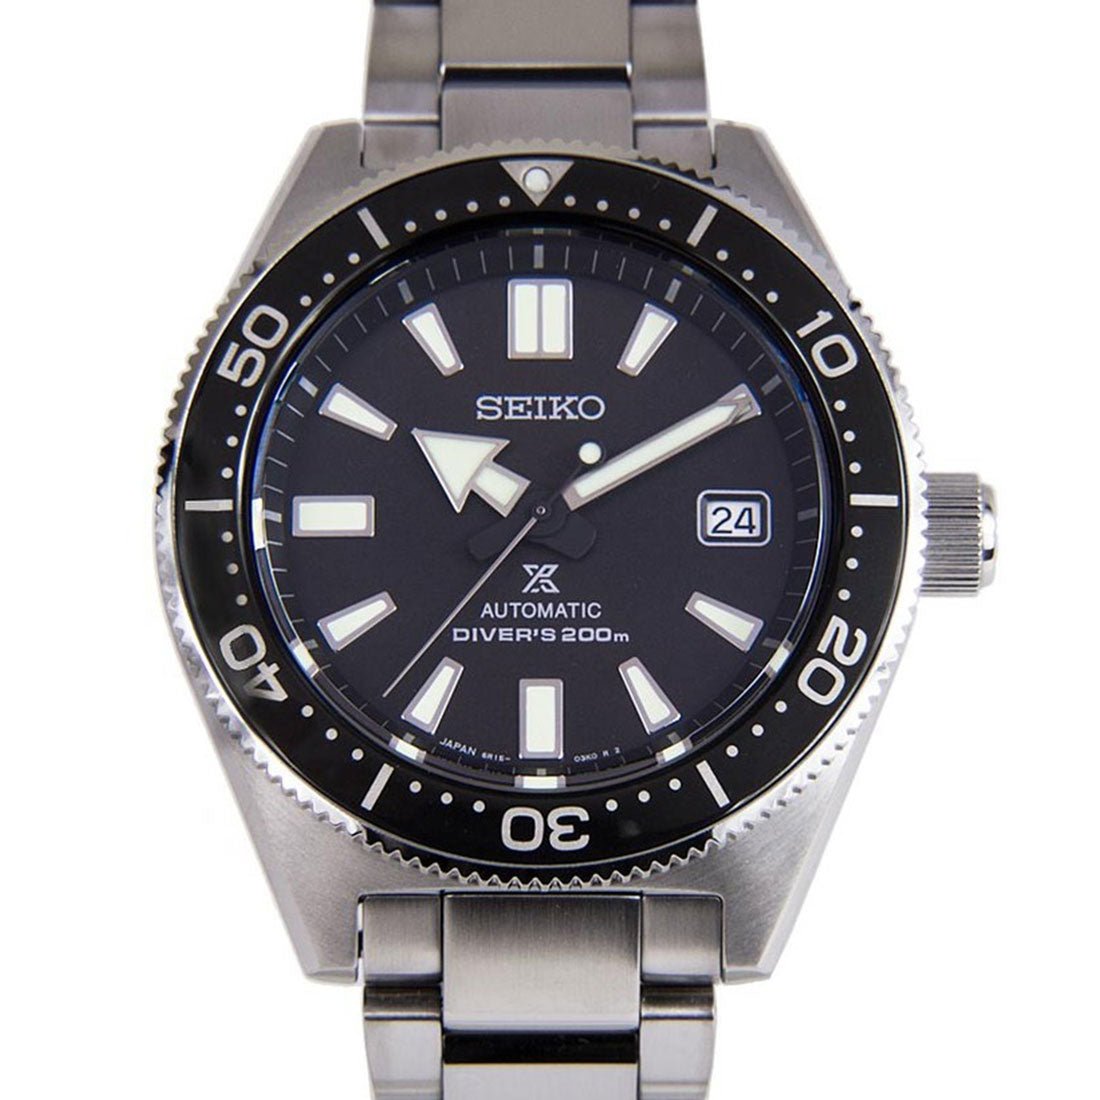 Seiko Prospex Diving JDM Watch SBDC051 SBDC051J SBDC051J1 -Seiko